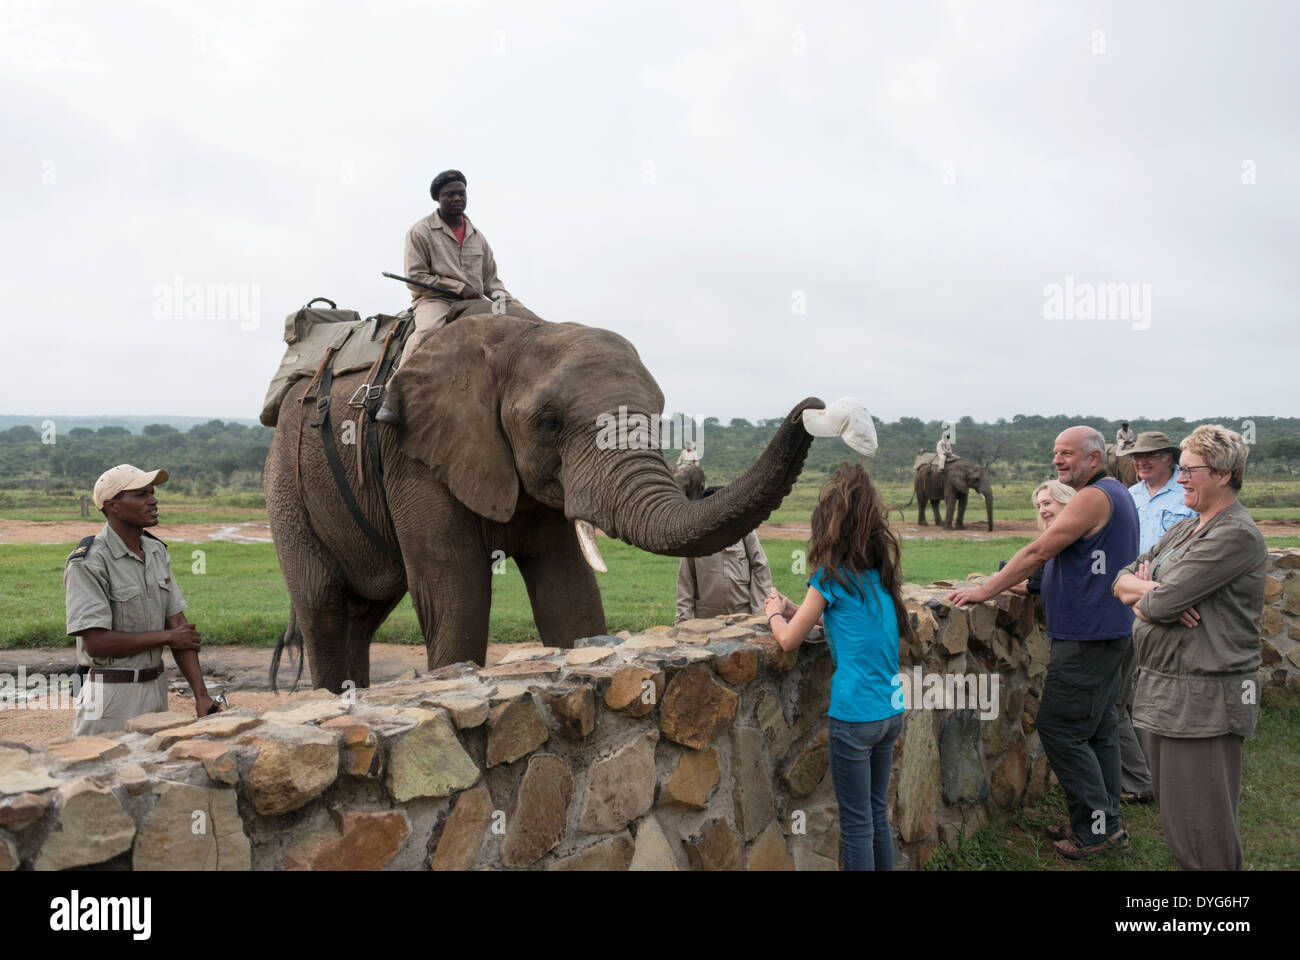 Rangers assis sur l'éléphant les éléphants en arrière et prend la tête des filles de hat Banque D'Images